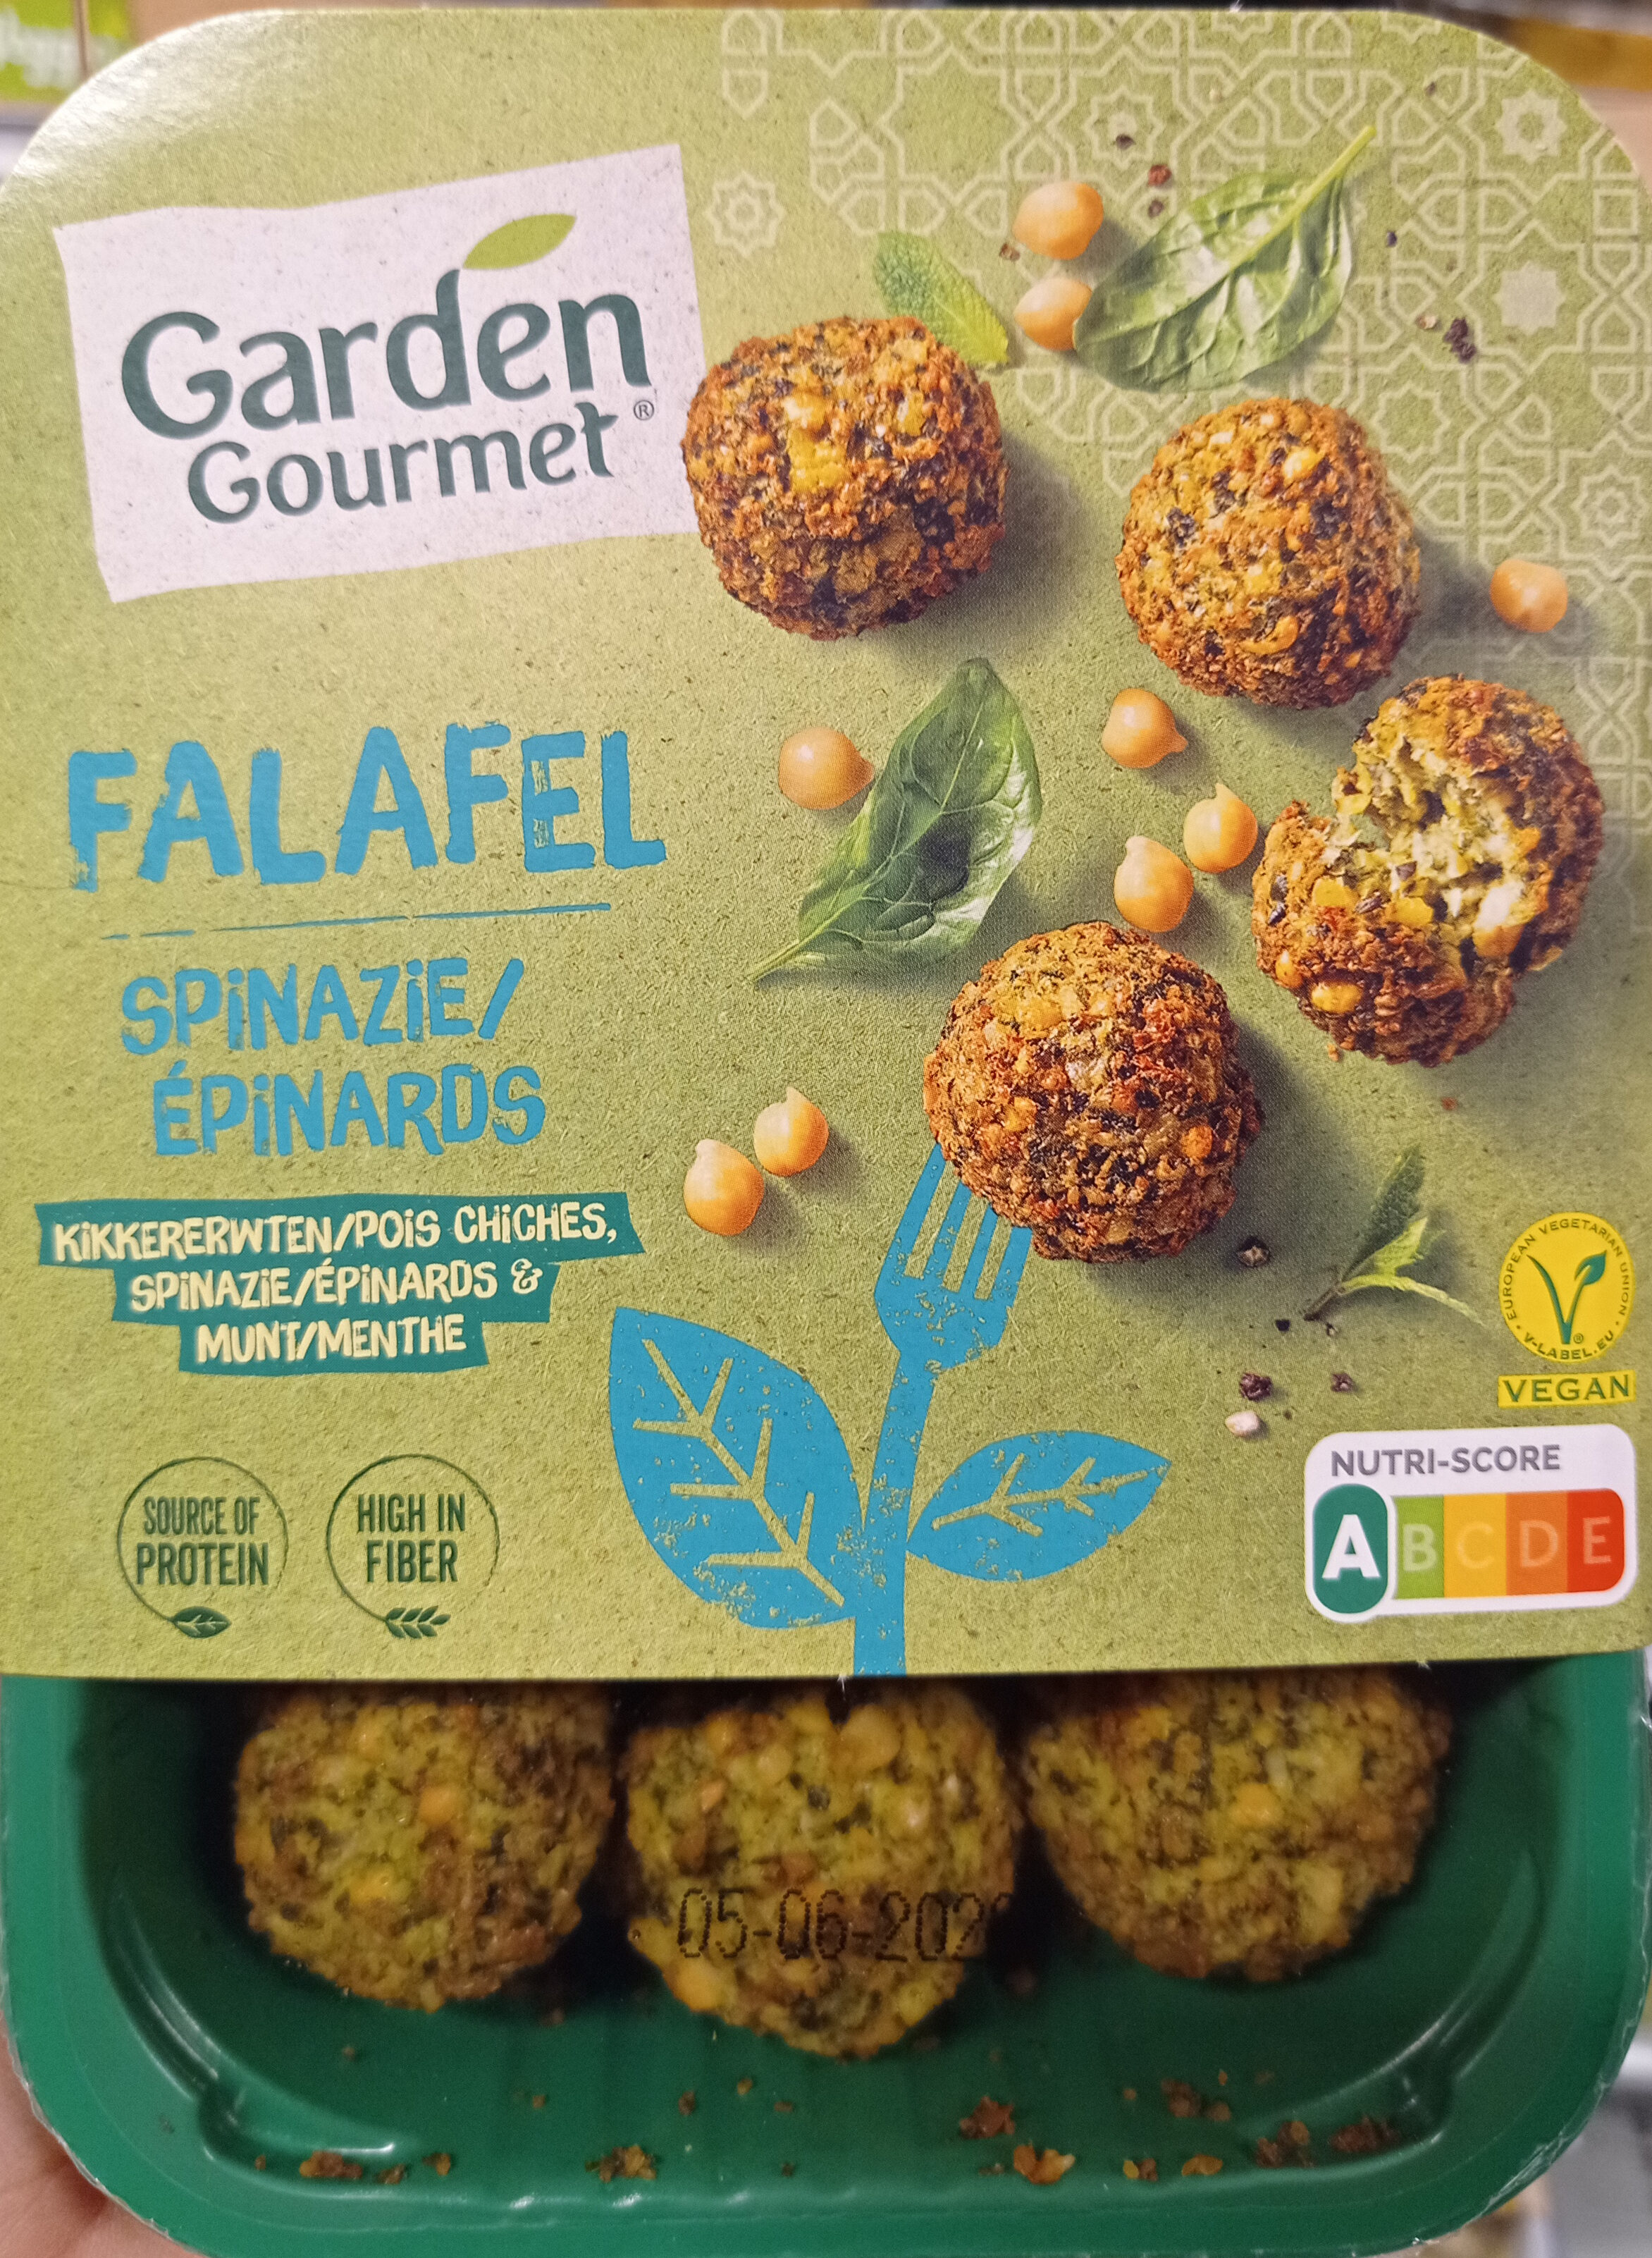 Falafel épinards - Product - fr